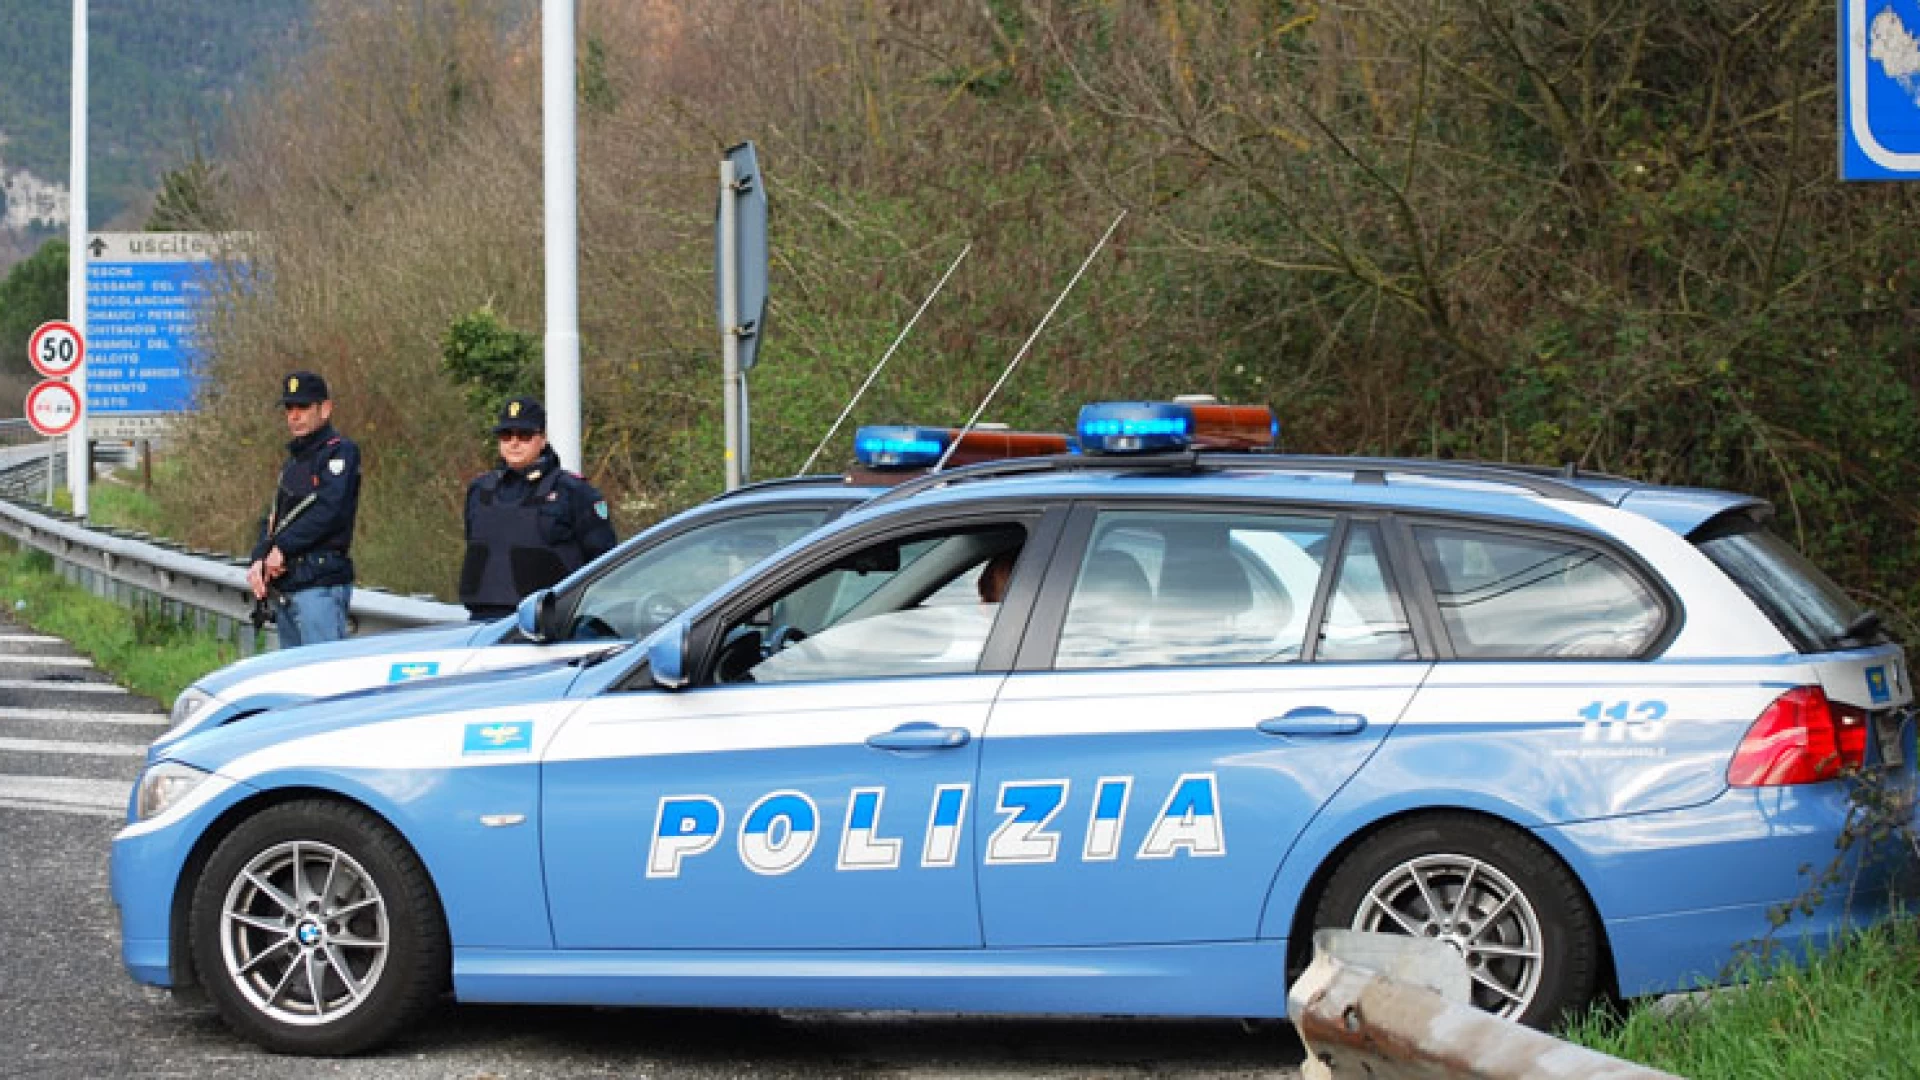 Isernia: Polizia sul territorio con il reparto prevenzione crimine “Lucania”.